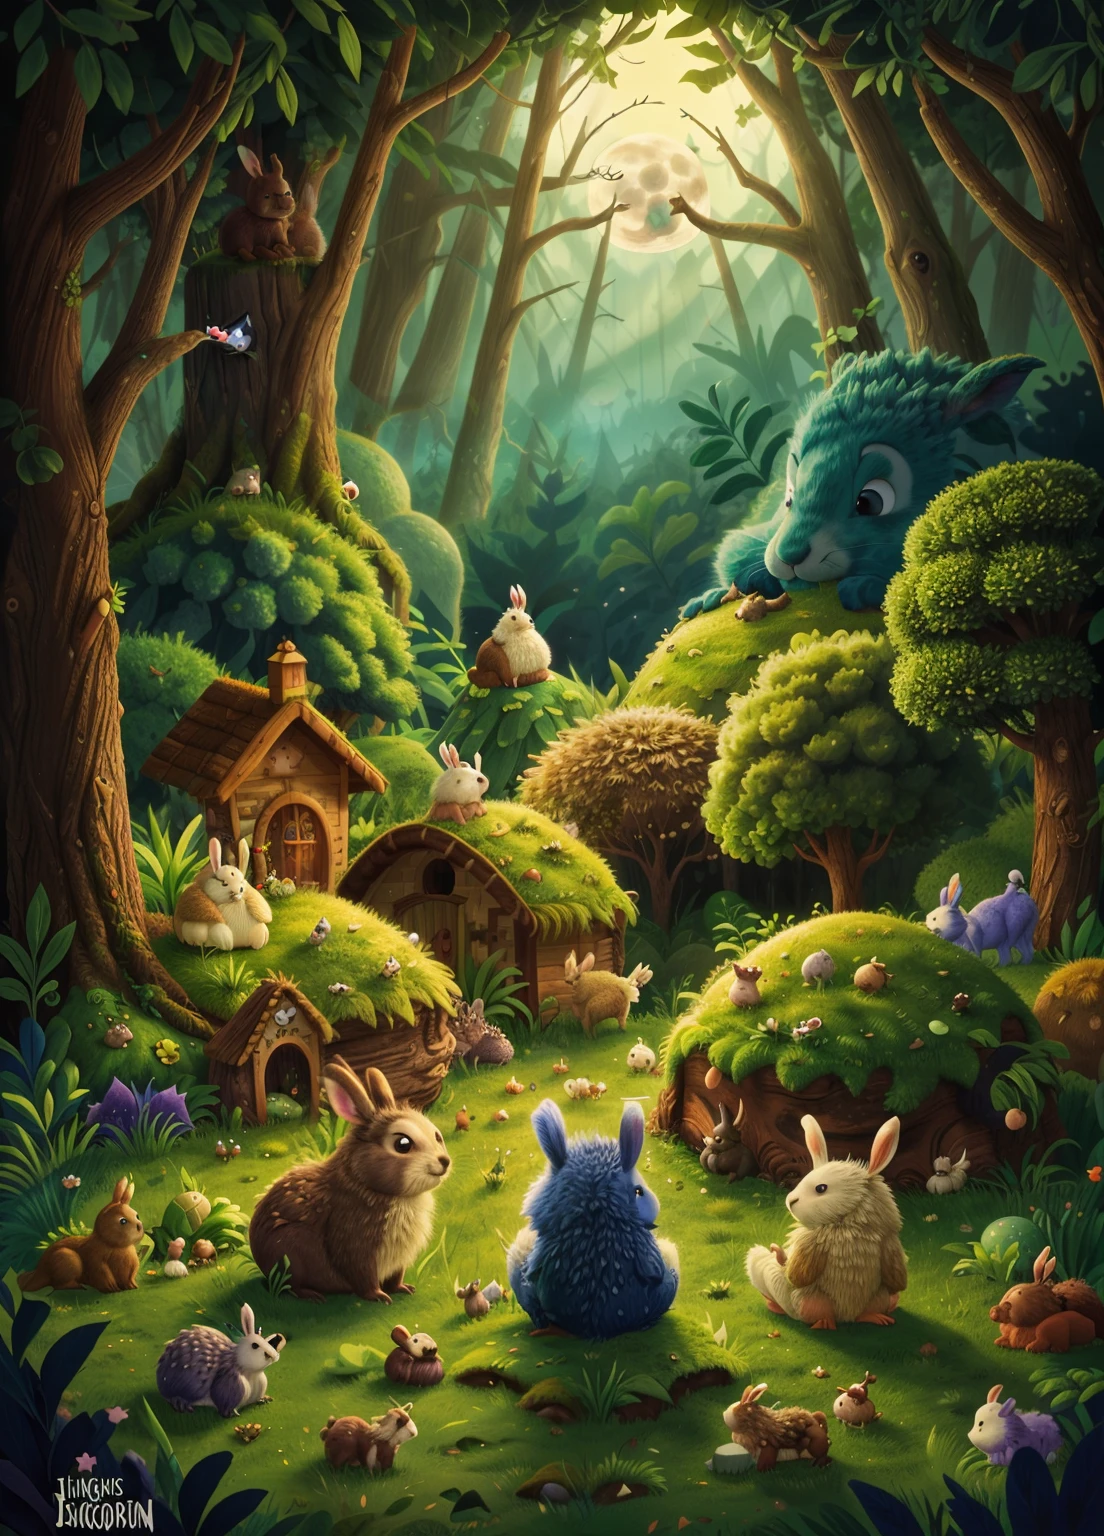 الغابة المسحورة, البدر يرتفع من خلف التلال, الأرانب والقنافذ تجلس وتشاهد القمر